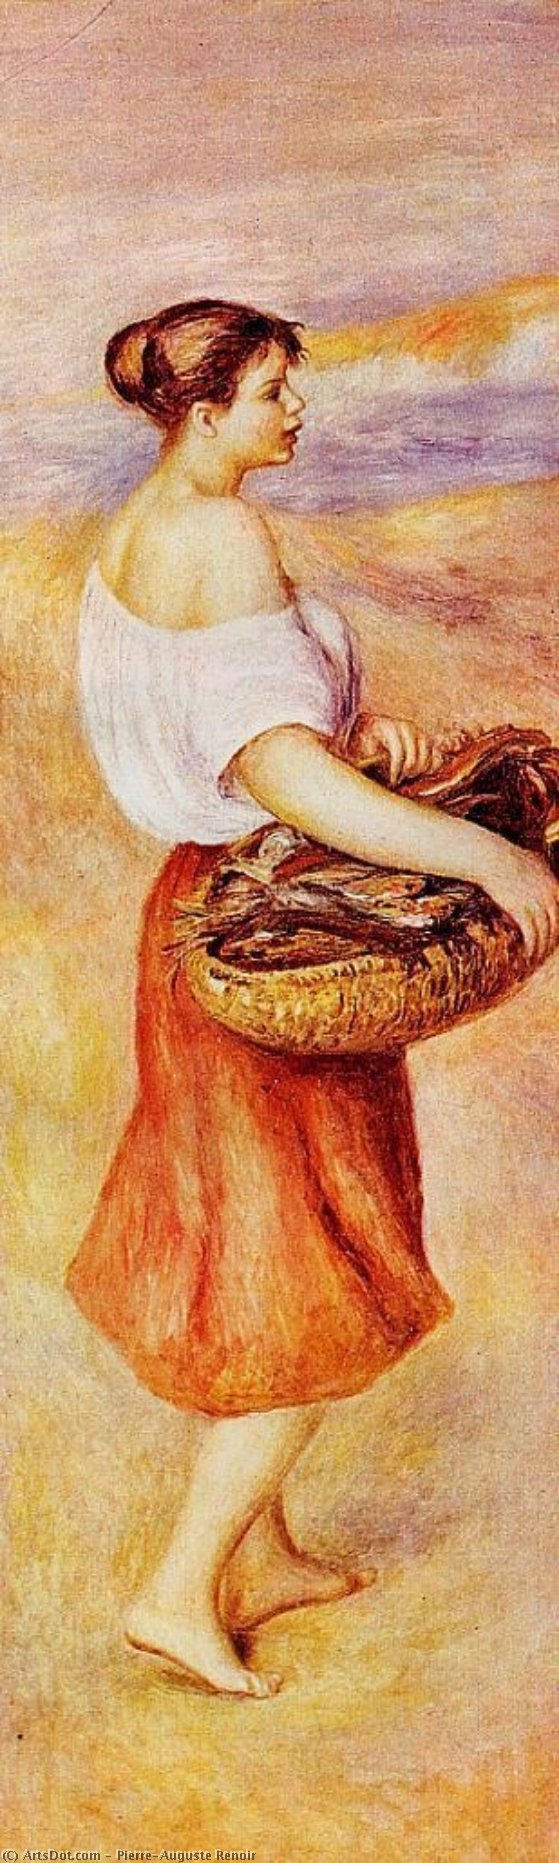 Wikioo.org - Bách khoa toàn thư về mỹ thuật - Vẽ tranh, Tác phẩm nghệ thuật Pierre-Auguste Renoir - The Fish Monger